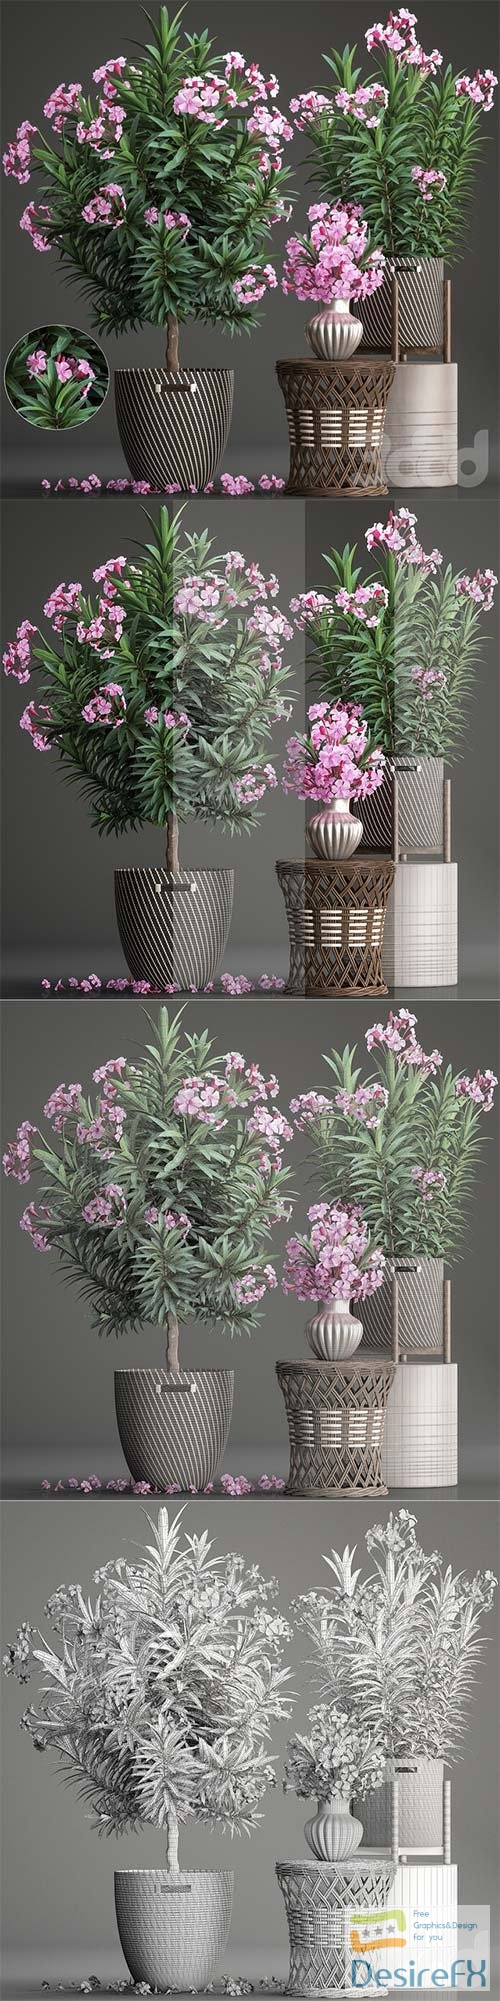 Oleander, plant collection 268 3D Model